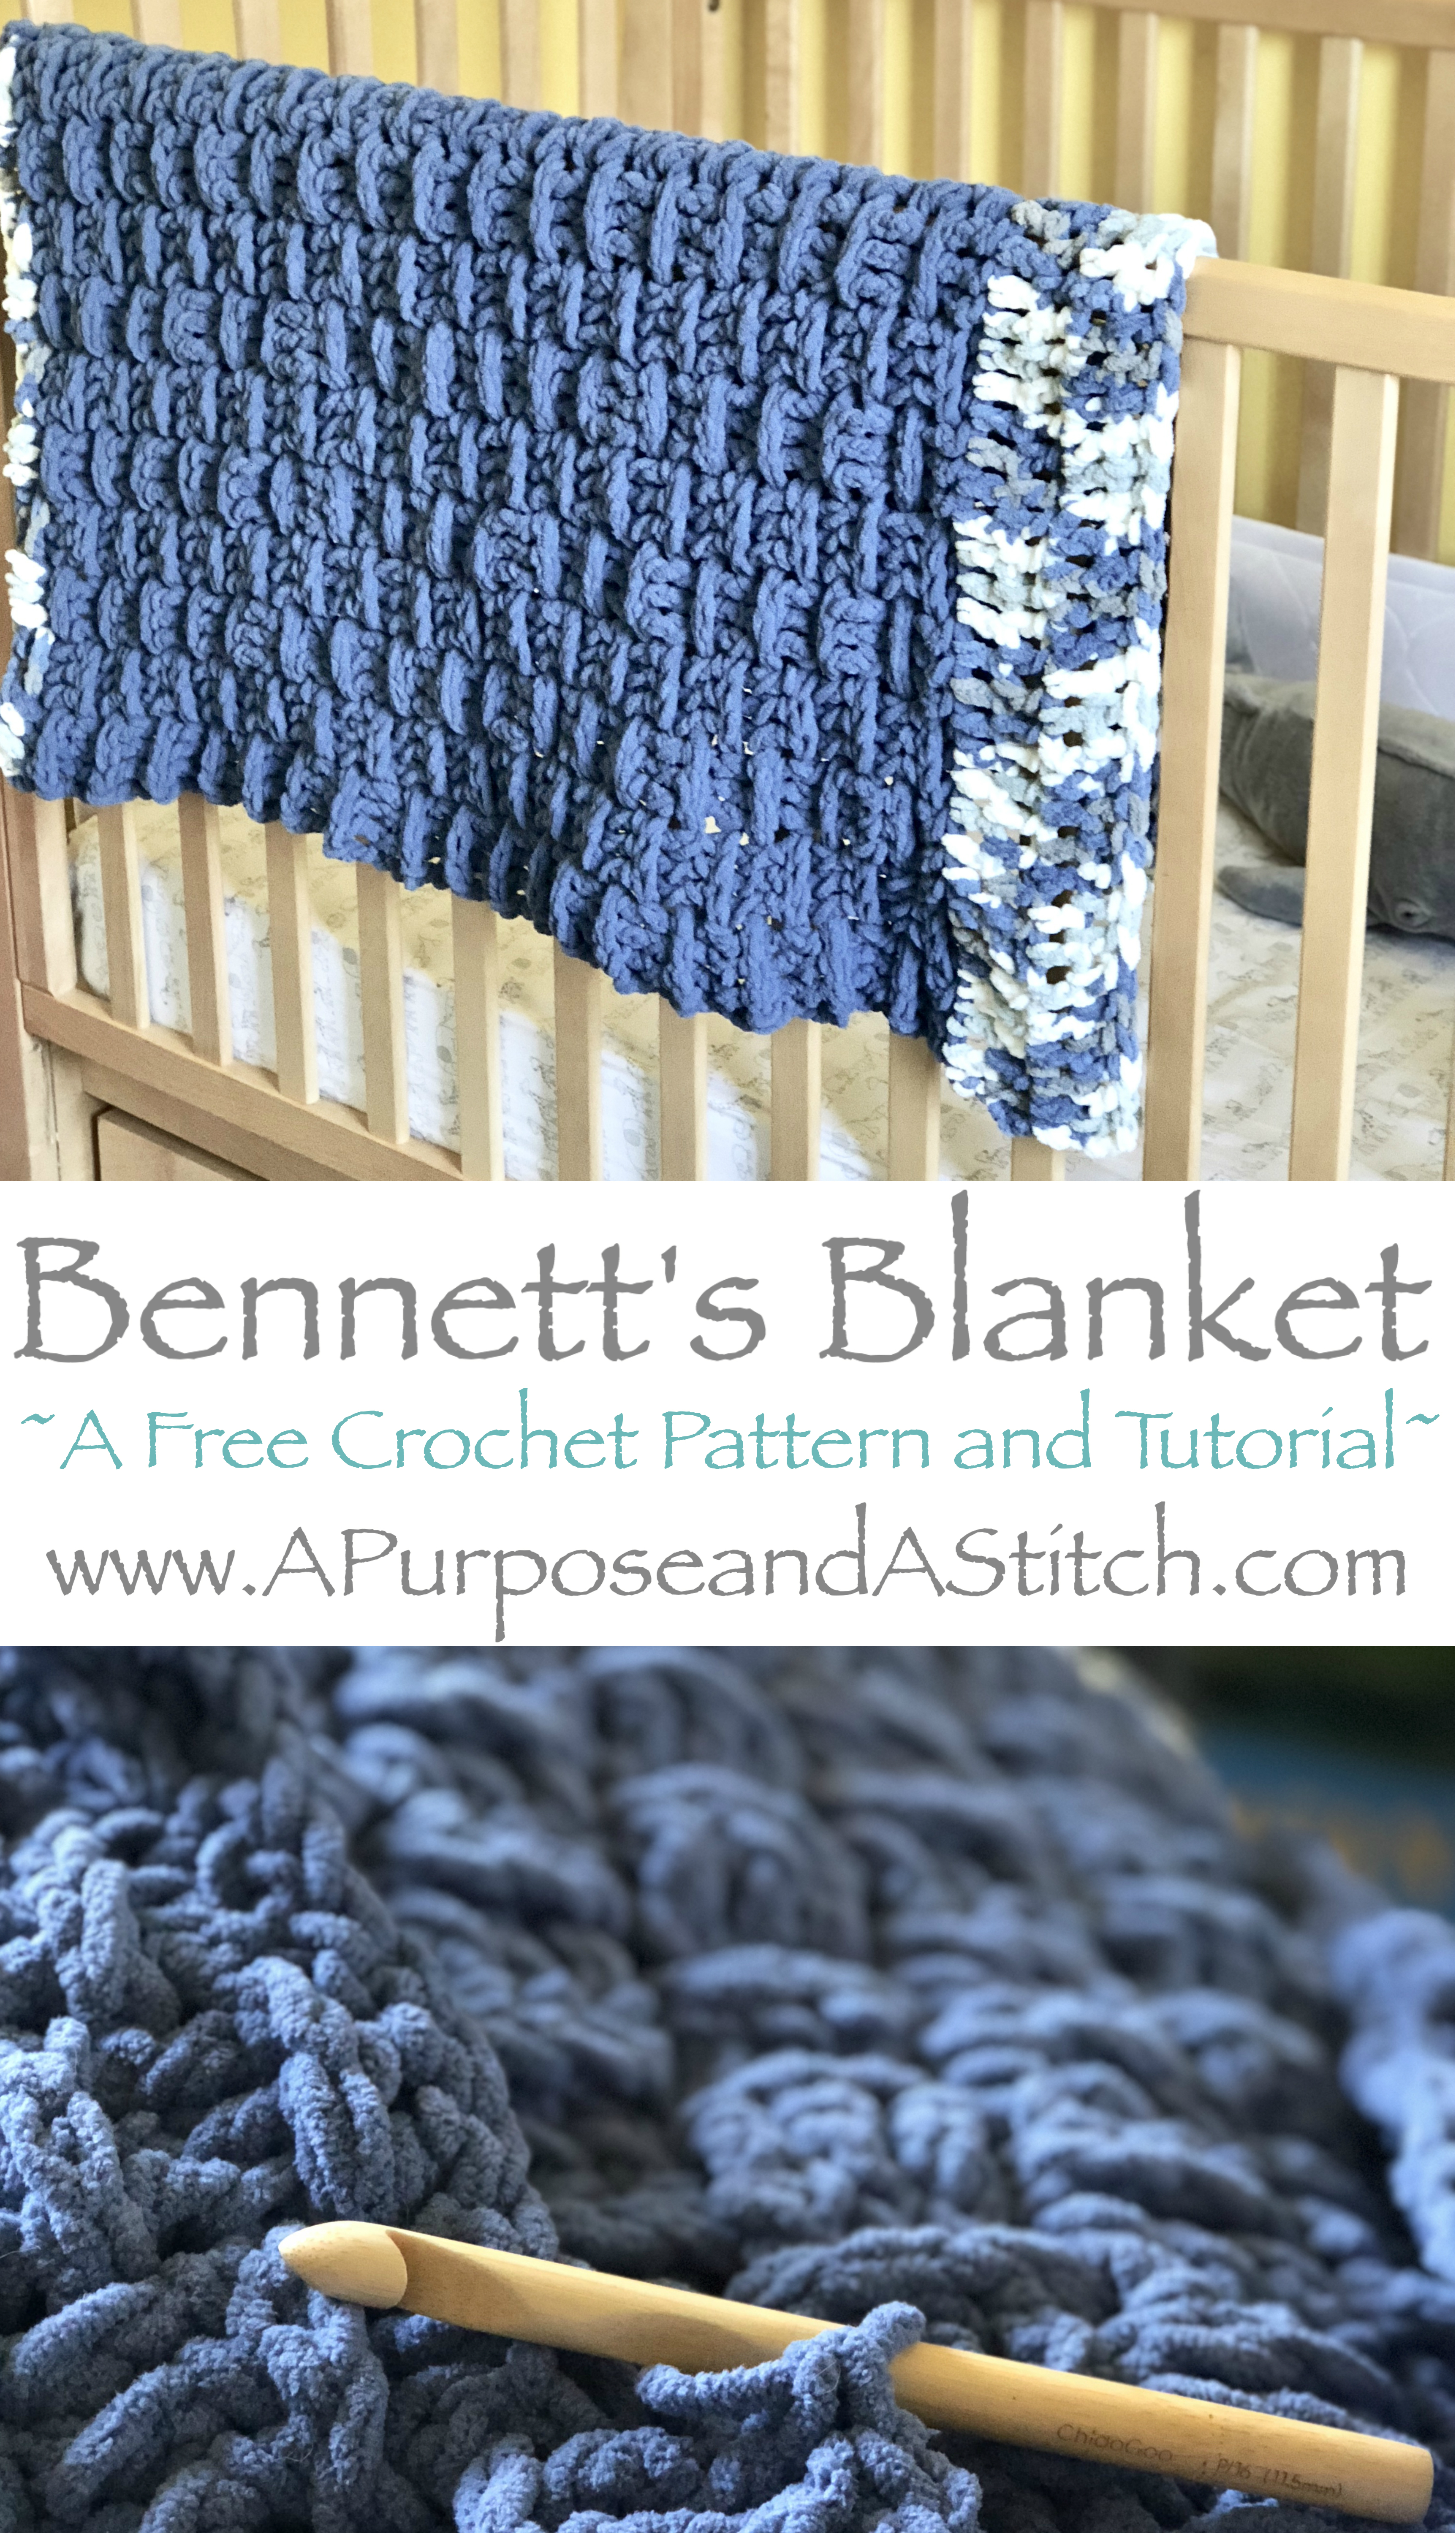 Bennett's Blanket.jpg